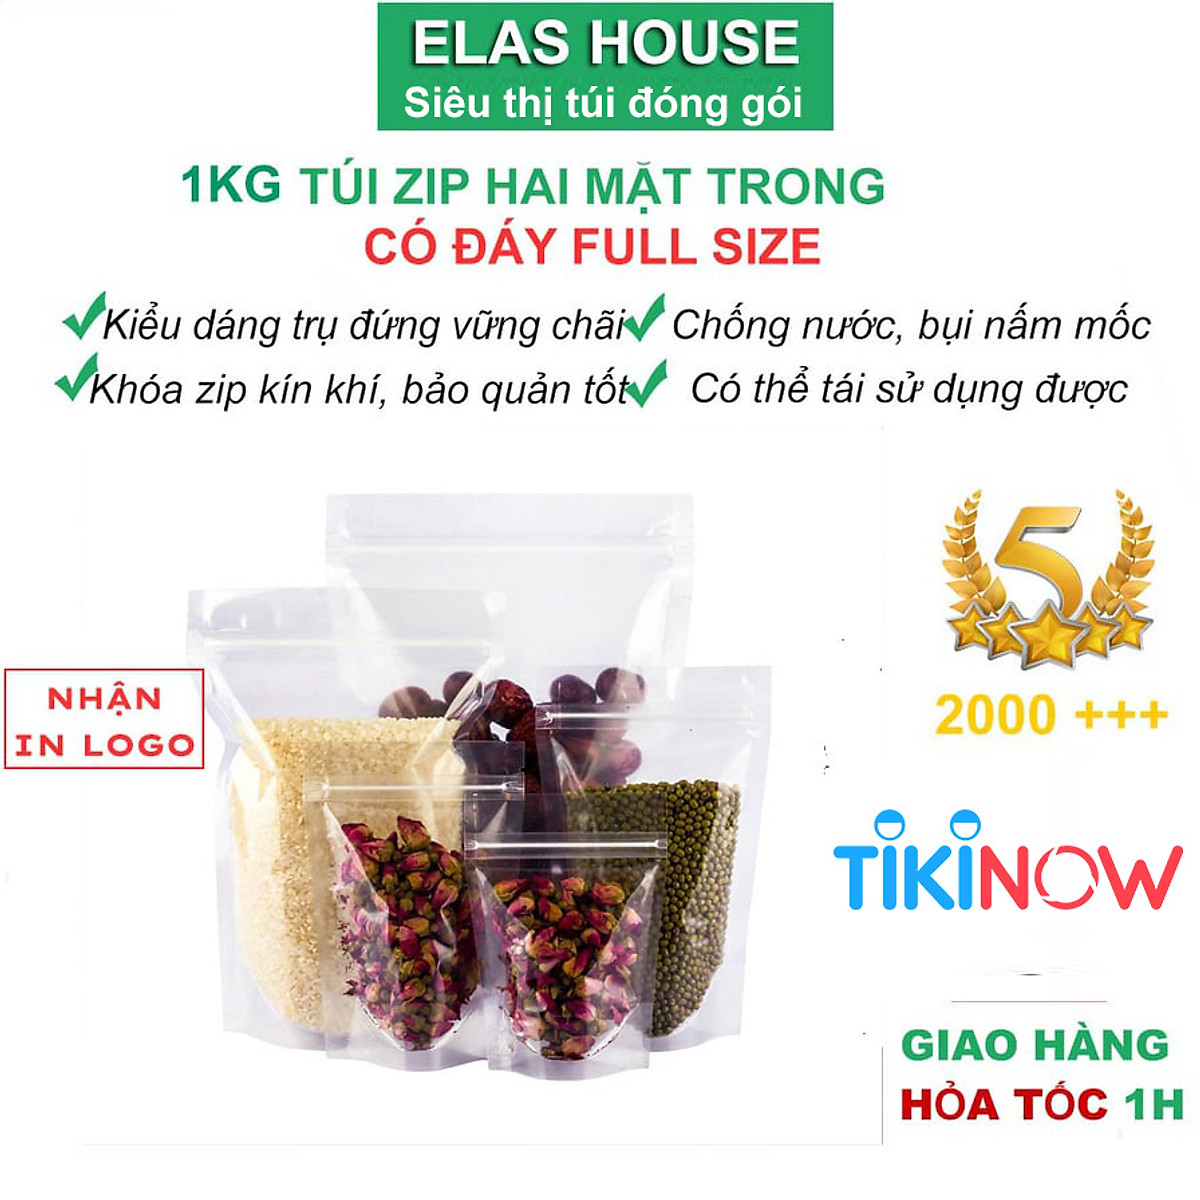 Túi zip đáy đứng 2 mặt trong đựng thực phẩm, 1kg túi zip đựng thực phẩm trong suốt Elas House